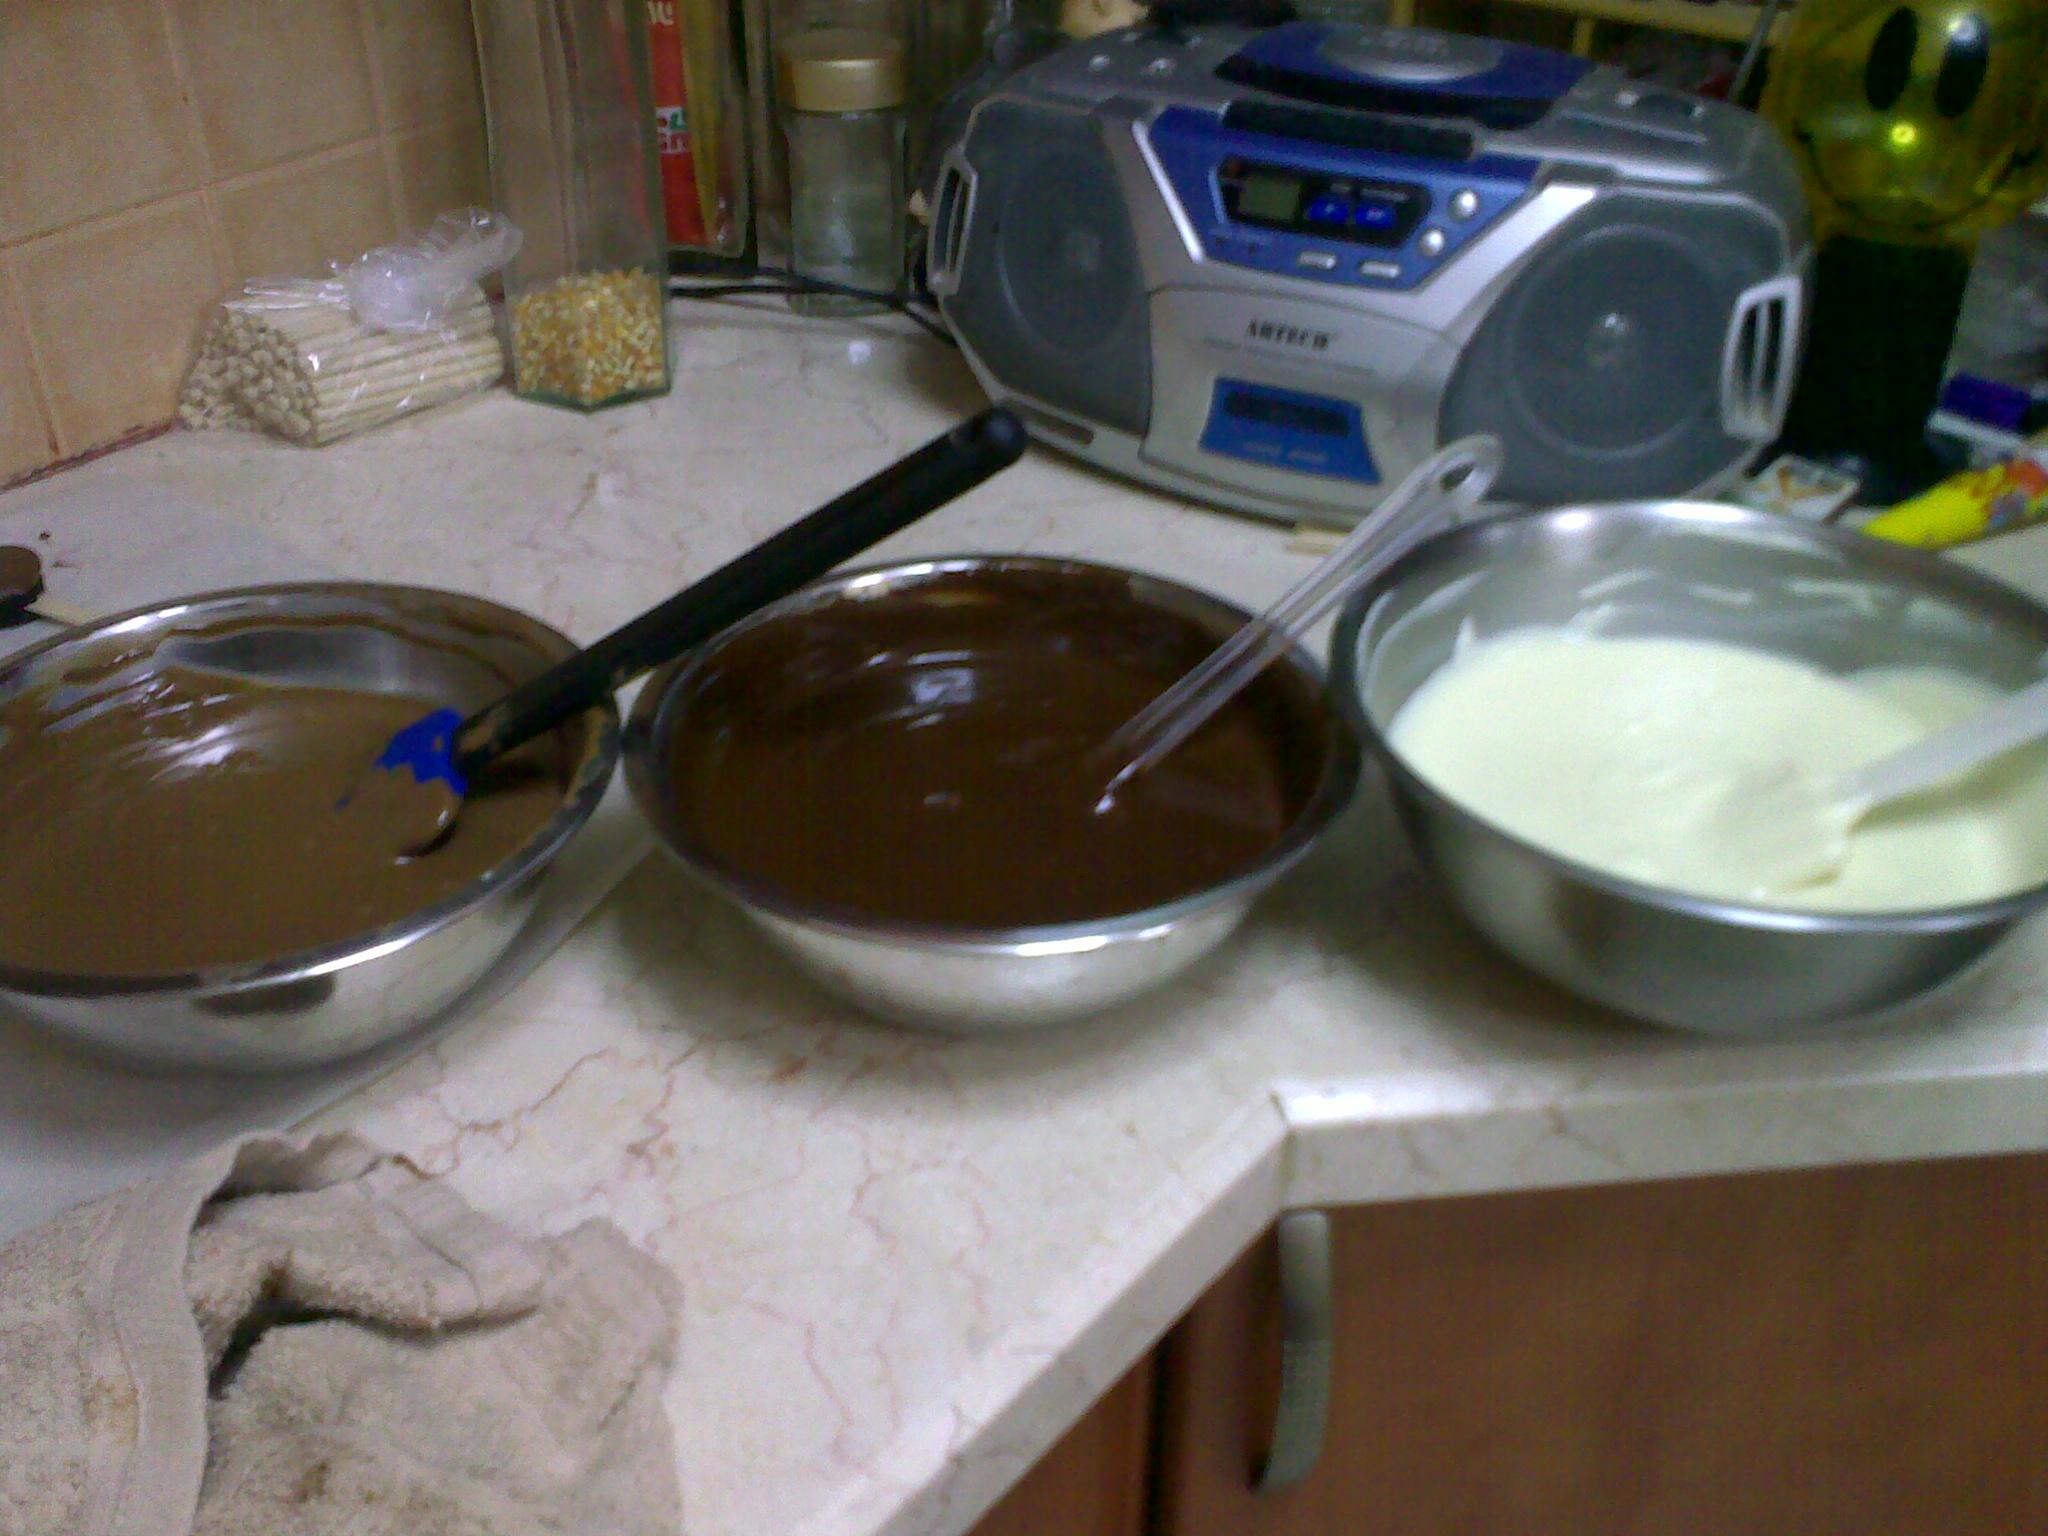 קערות שוקולד לבן, שוקולד חלב, ולשוקטולדמריר ממתינות לשוקוהוליק יובל חדד 054-5640190 נכון שפשוט בא להכניס אצבע וללקק?